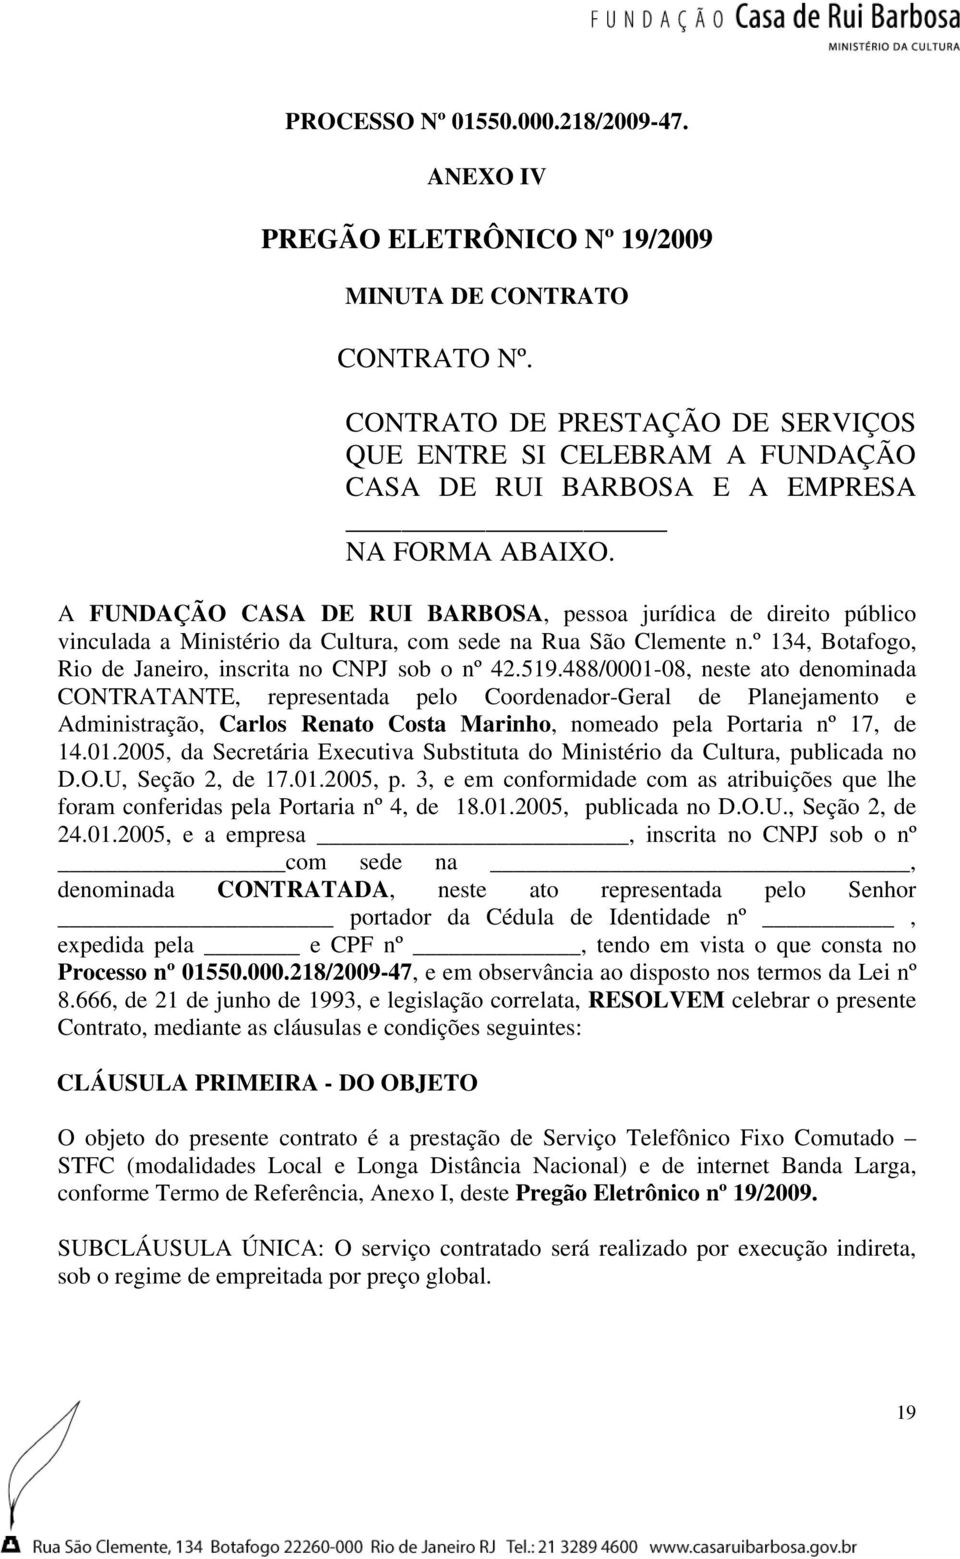 A FUNDAÇÃO CASA DE RUI BARBOSA, pessoa jurídica de direito público vinculada a Ministério da Cultura, com sede na Rua São Clemente n.º 134, Botafogo, Rio de Janeiro, inscrita no CNPJ sob o nº 42.519.